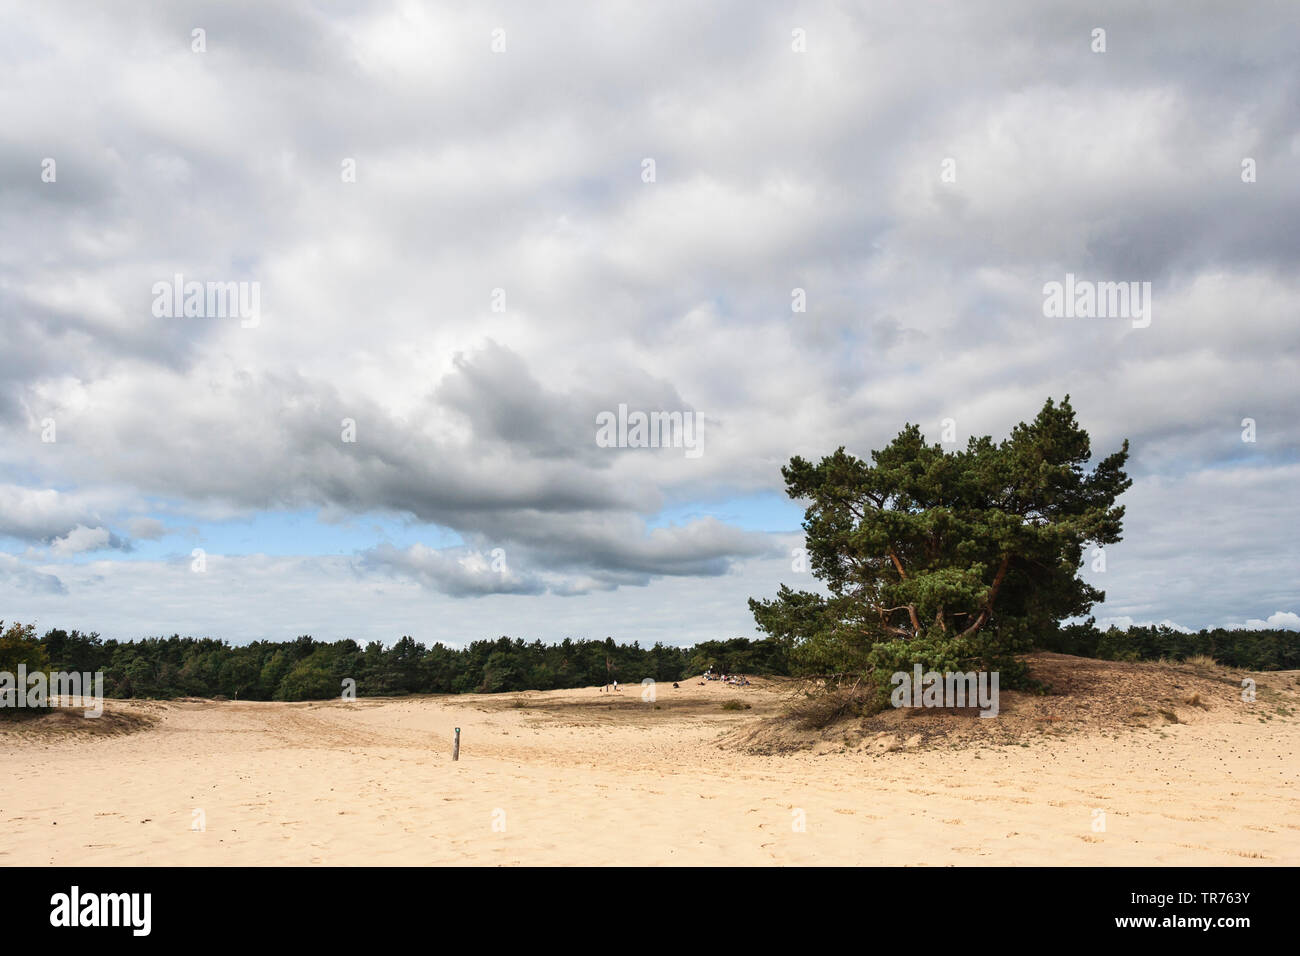 Schottische Kiefer, Kiefer (Pinus sylvestris), bewölkter Himmel über ausgedehnte Landschaft von Kootwijkerzand im Sommer, Niederlande, Gelderland, Kootwijkerzand Stockfoto